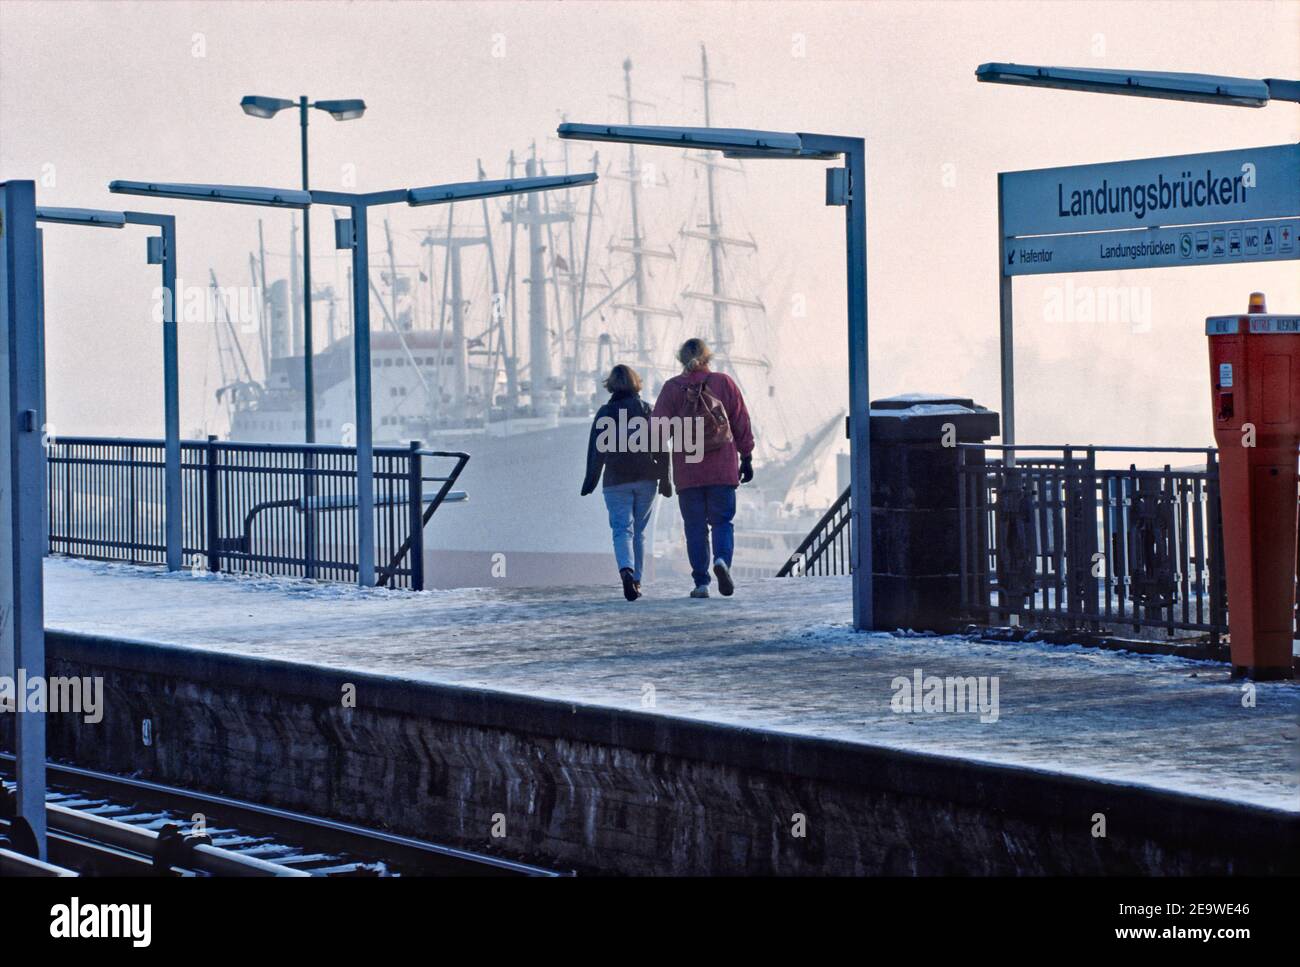 Jeune couple quittant la plate-forme de la gare de S-train Landungsbrücken à Hambourg, Allemagne. Banque D'Images